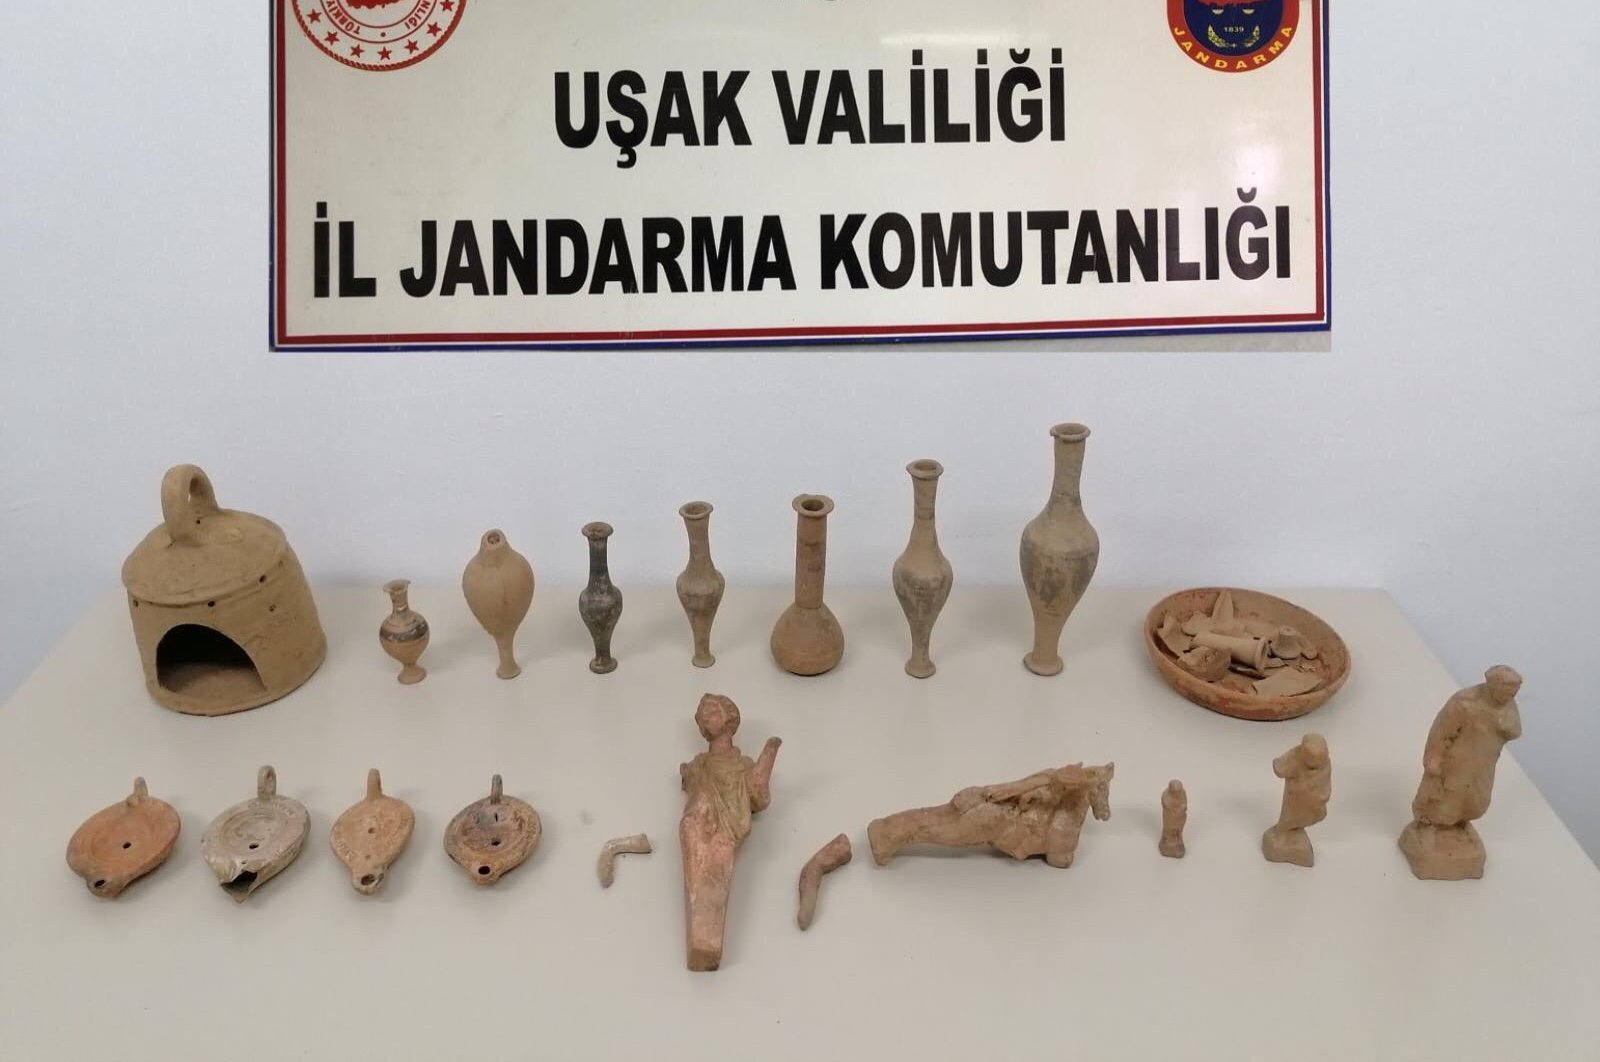 Турецкие полицейские обнаружили уникальные артефакты